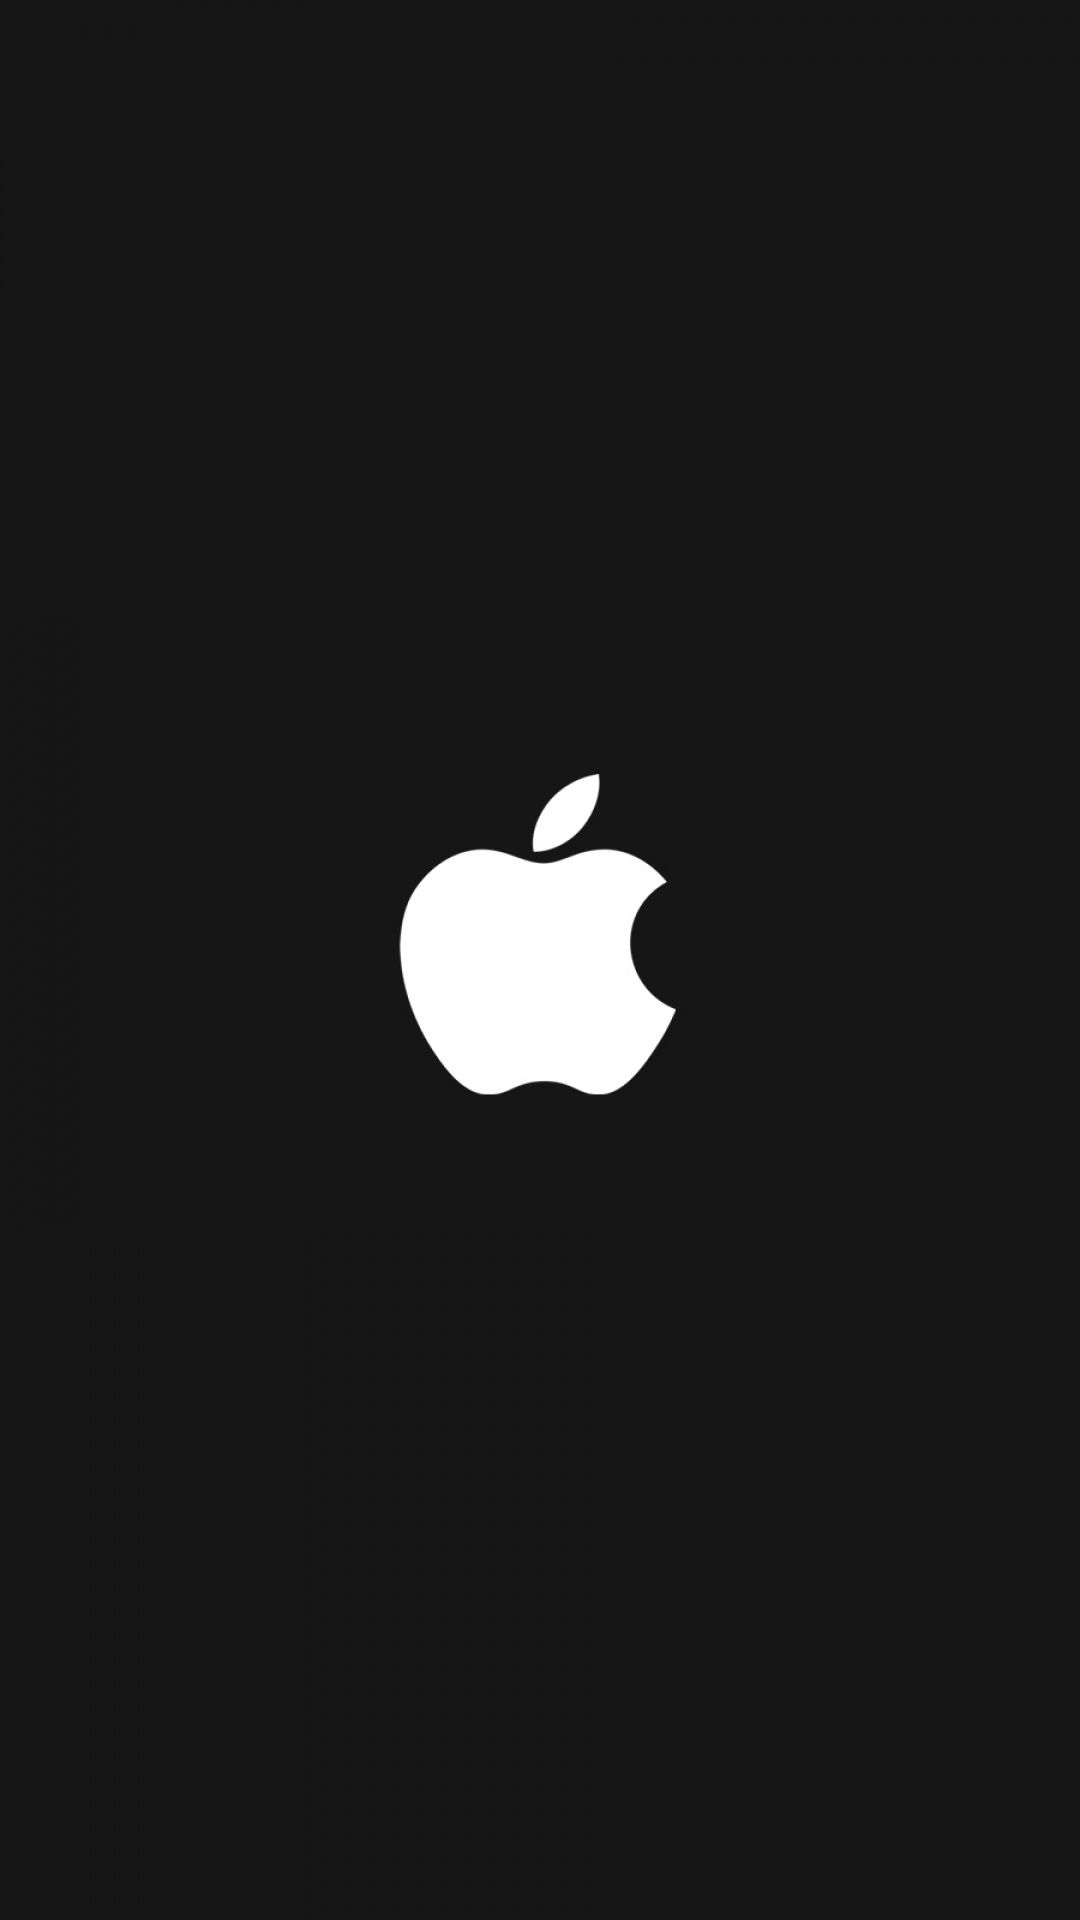 Apple Logo Wallpaper Hd - KibrisPDR